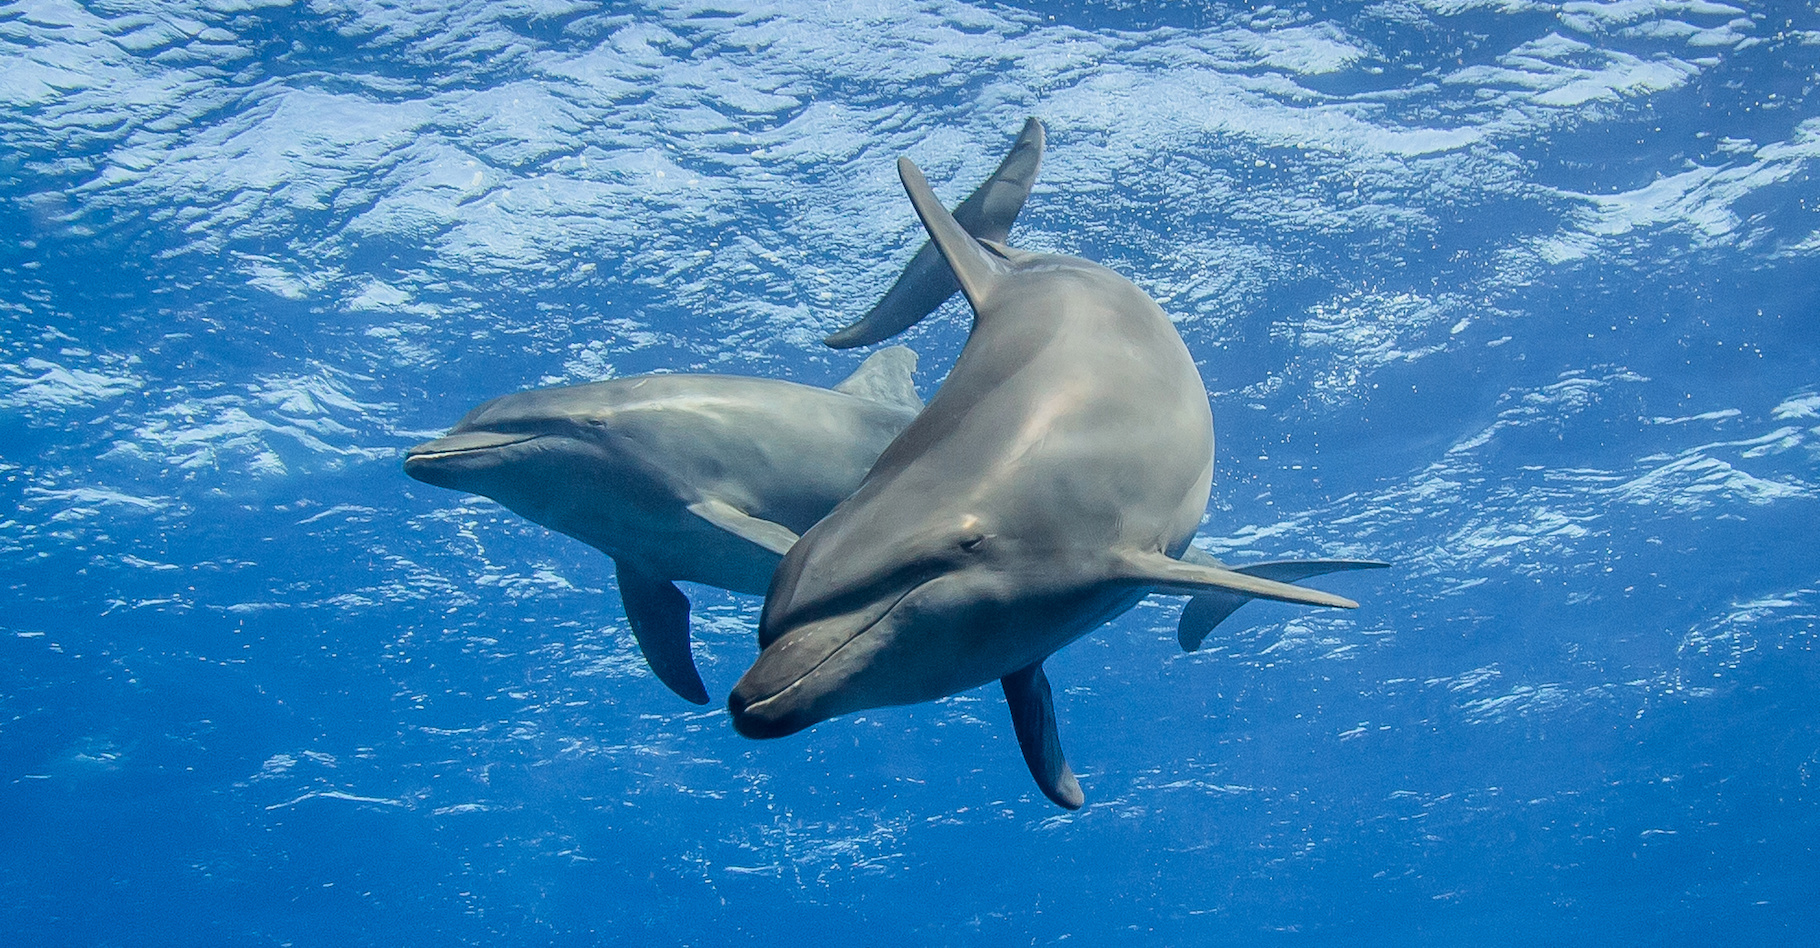 Sous l’eau, la communication entre dauphins est perturbée par la pollution sonore. Des chercheurs de l’université de Bristol (Royaume-Uni) nous apprennent aujourd’hui que cela les pousse parfois à crier pour se faire entendre de leurs compagnons ! © Tropicalens, Adobe Stock